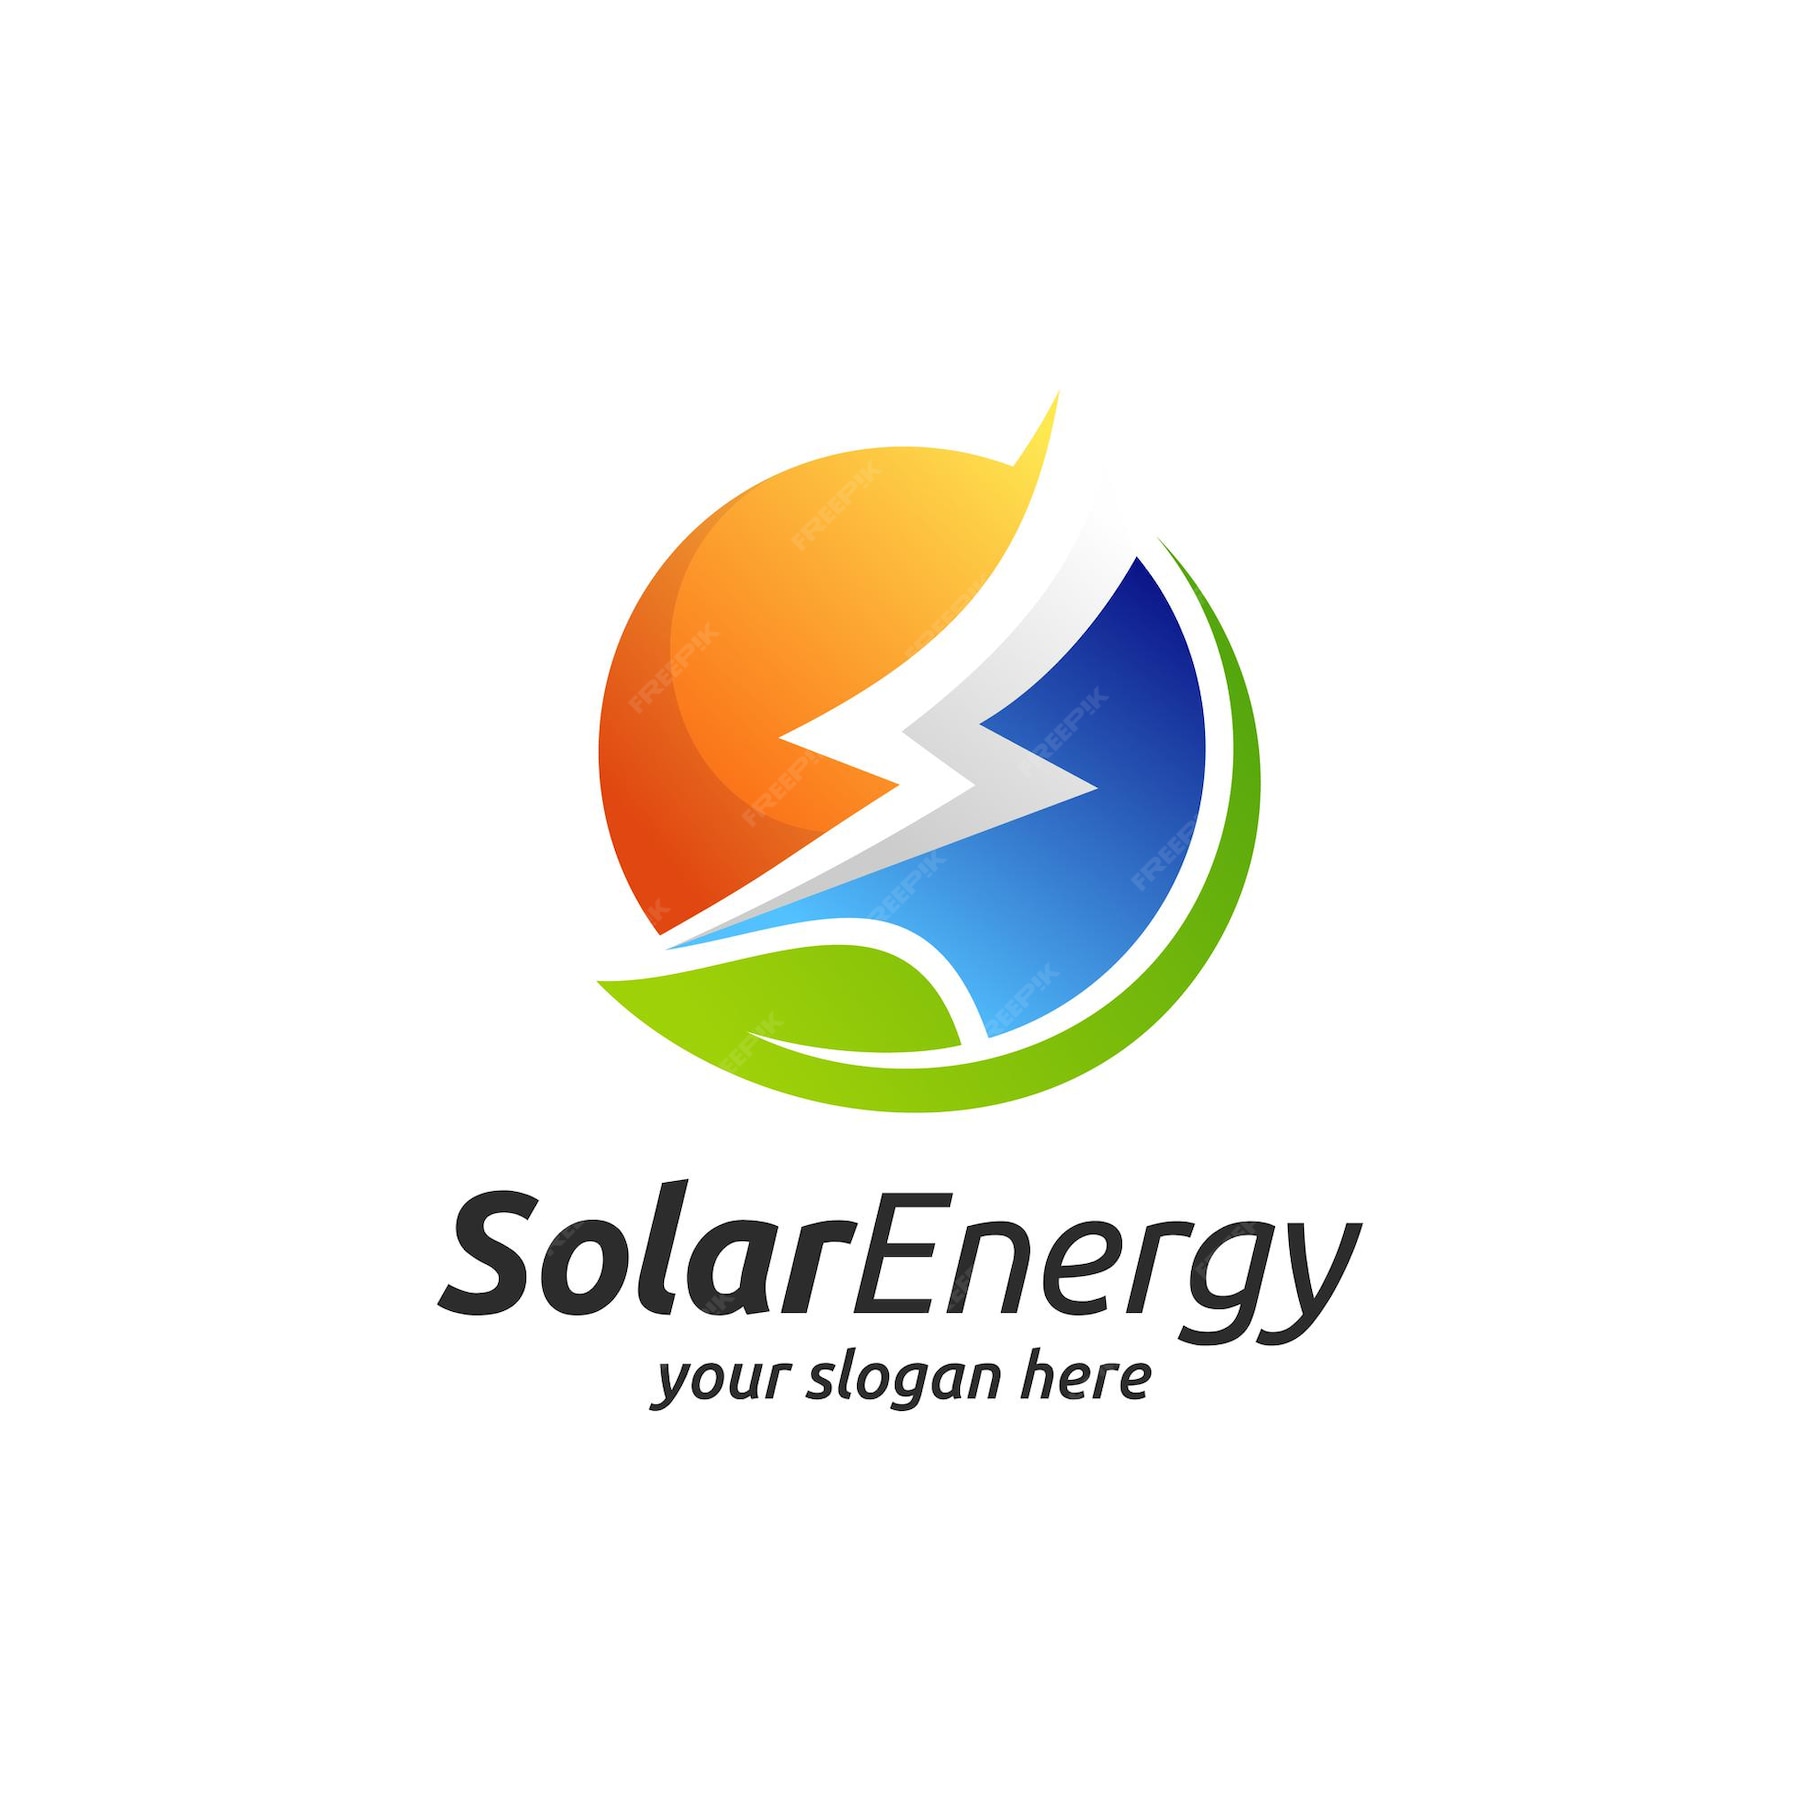 Diseño De Logotipo De Energía Solar Con Concepto De Perno De Trueno